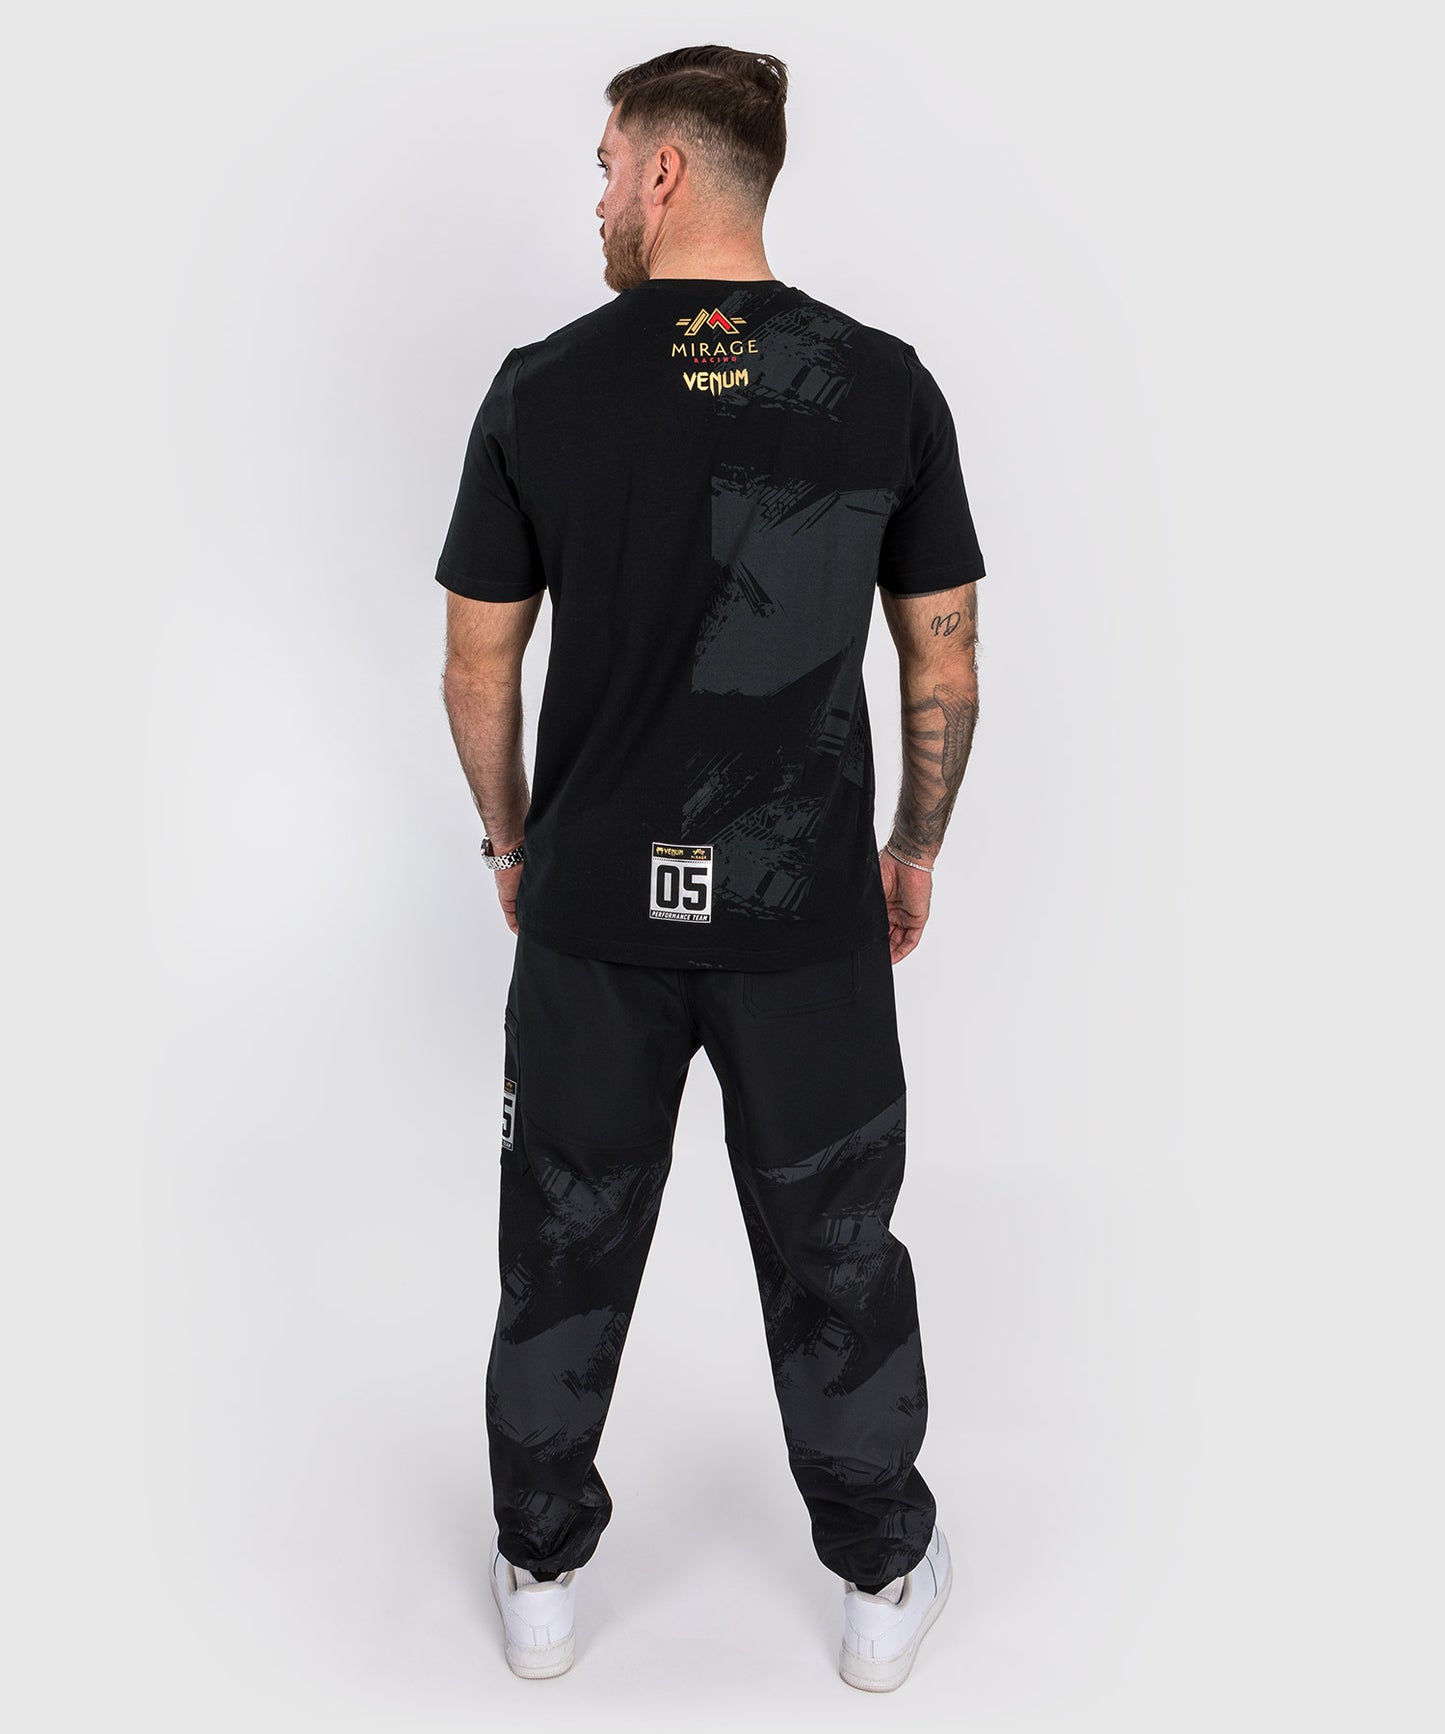 Venum x Mirage T-Shirt - Zwart/Goud